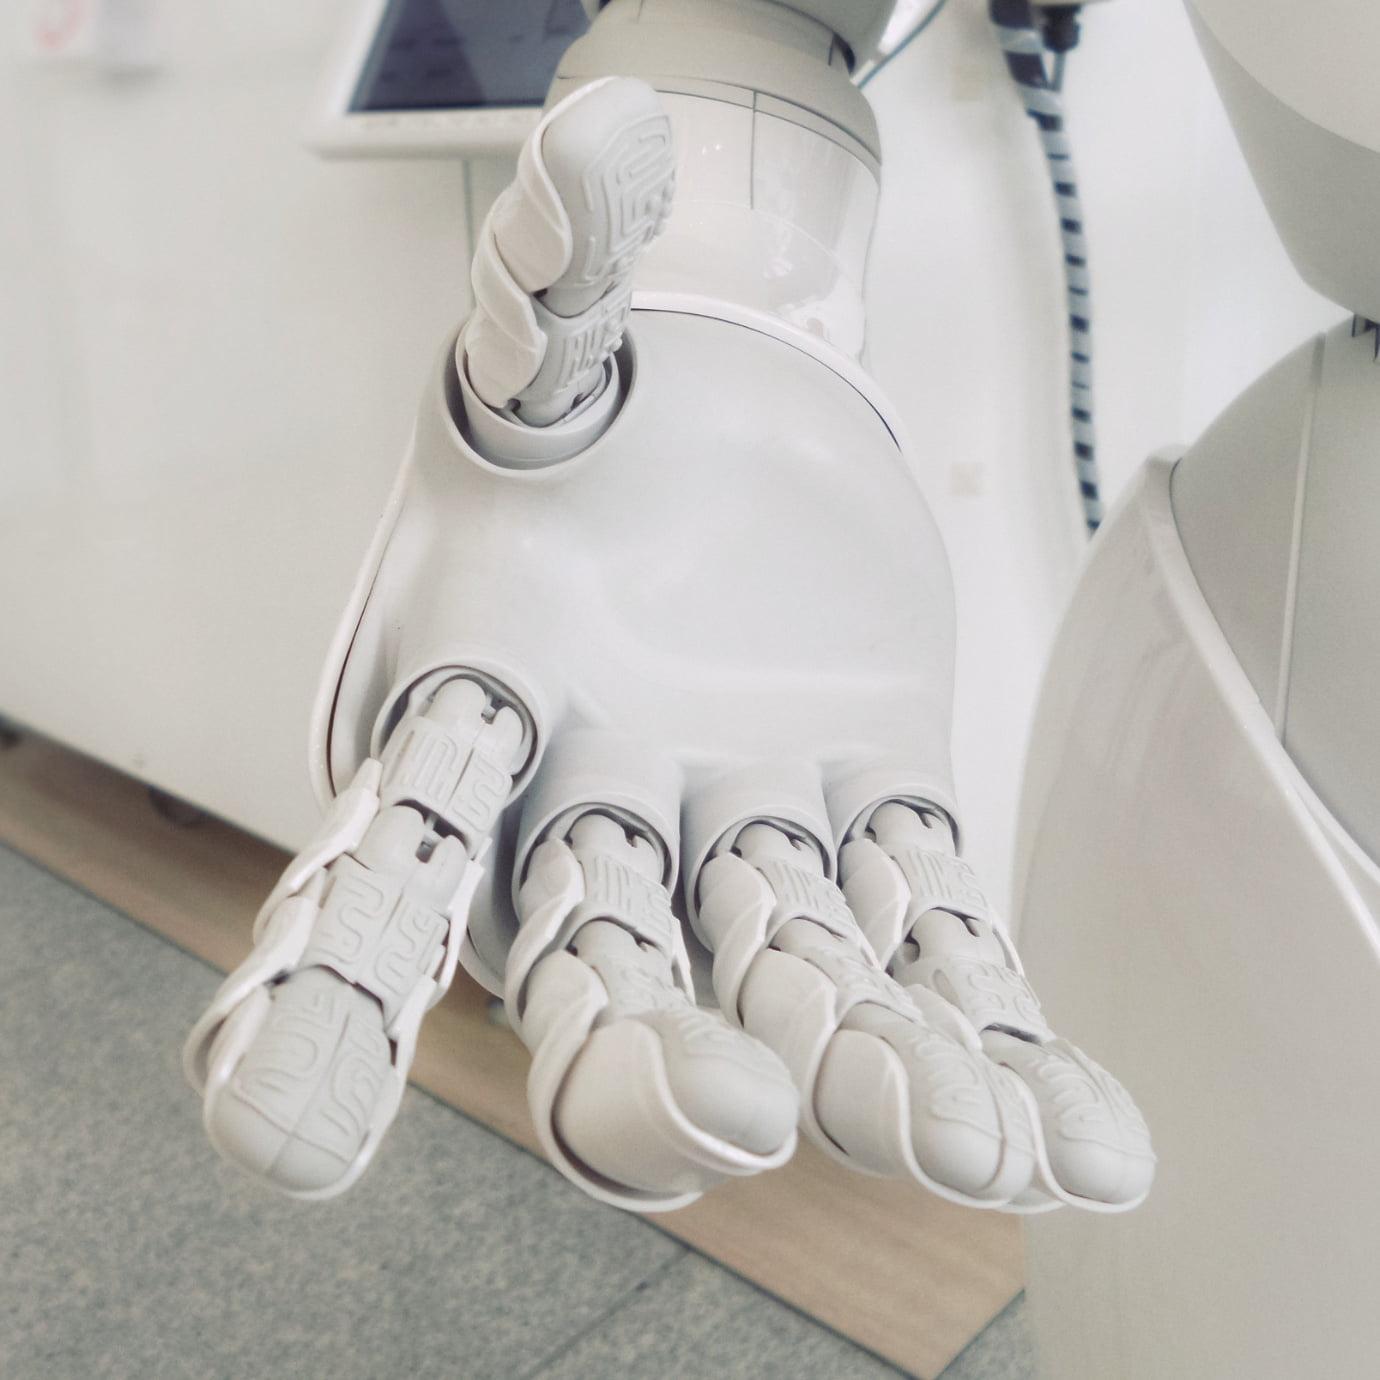 vodafone artificial intelligence robot hand